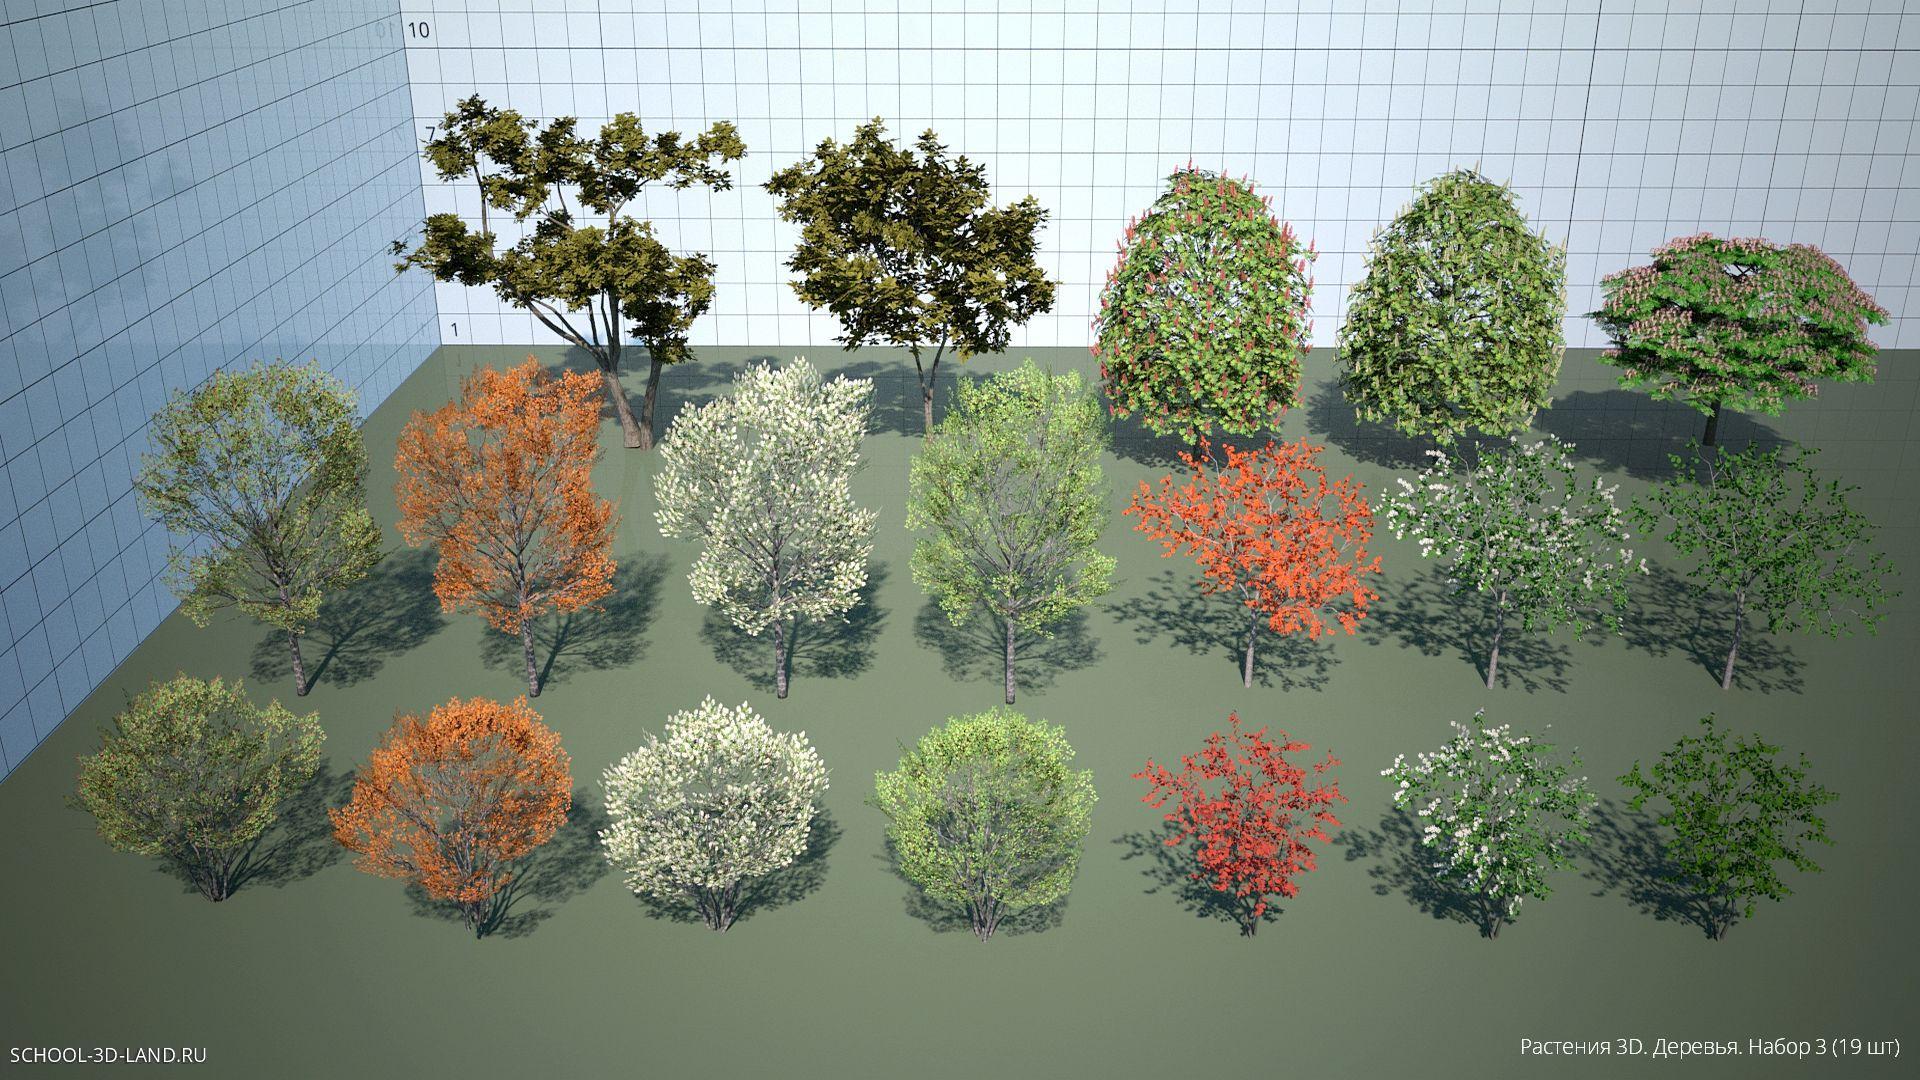 Деревья 3D. Набор 3 (19шт)